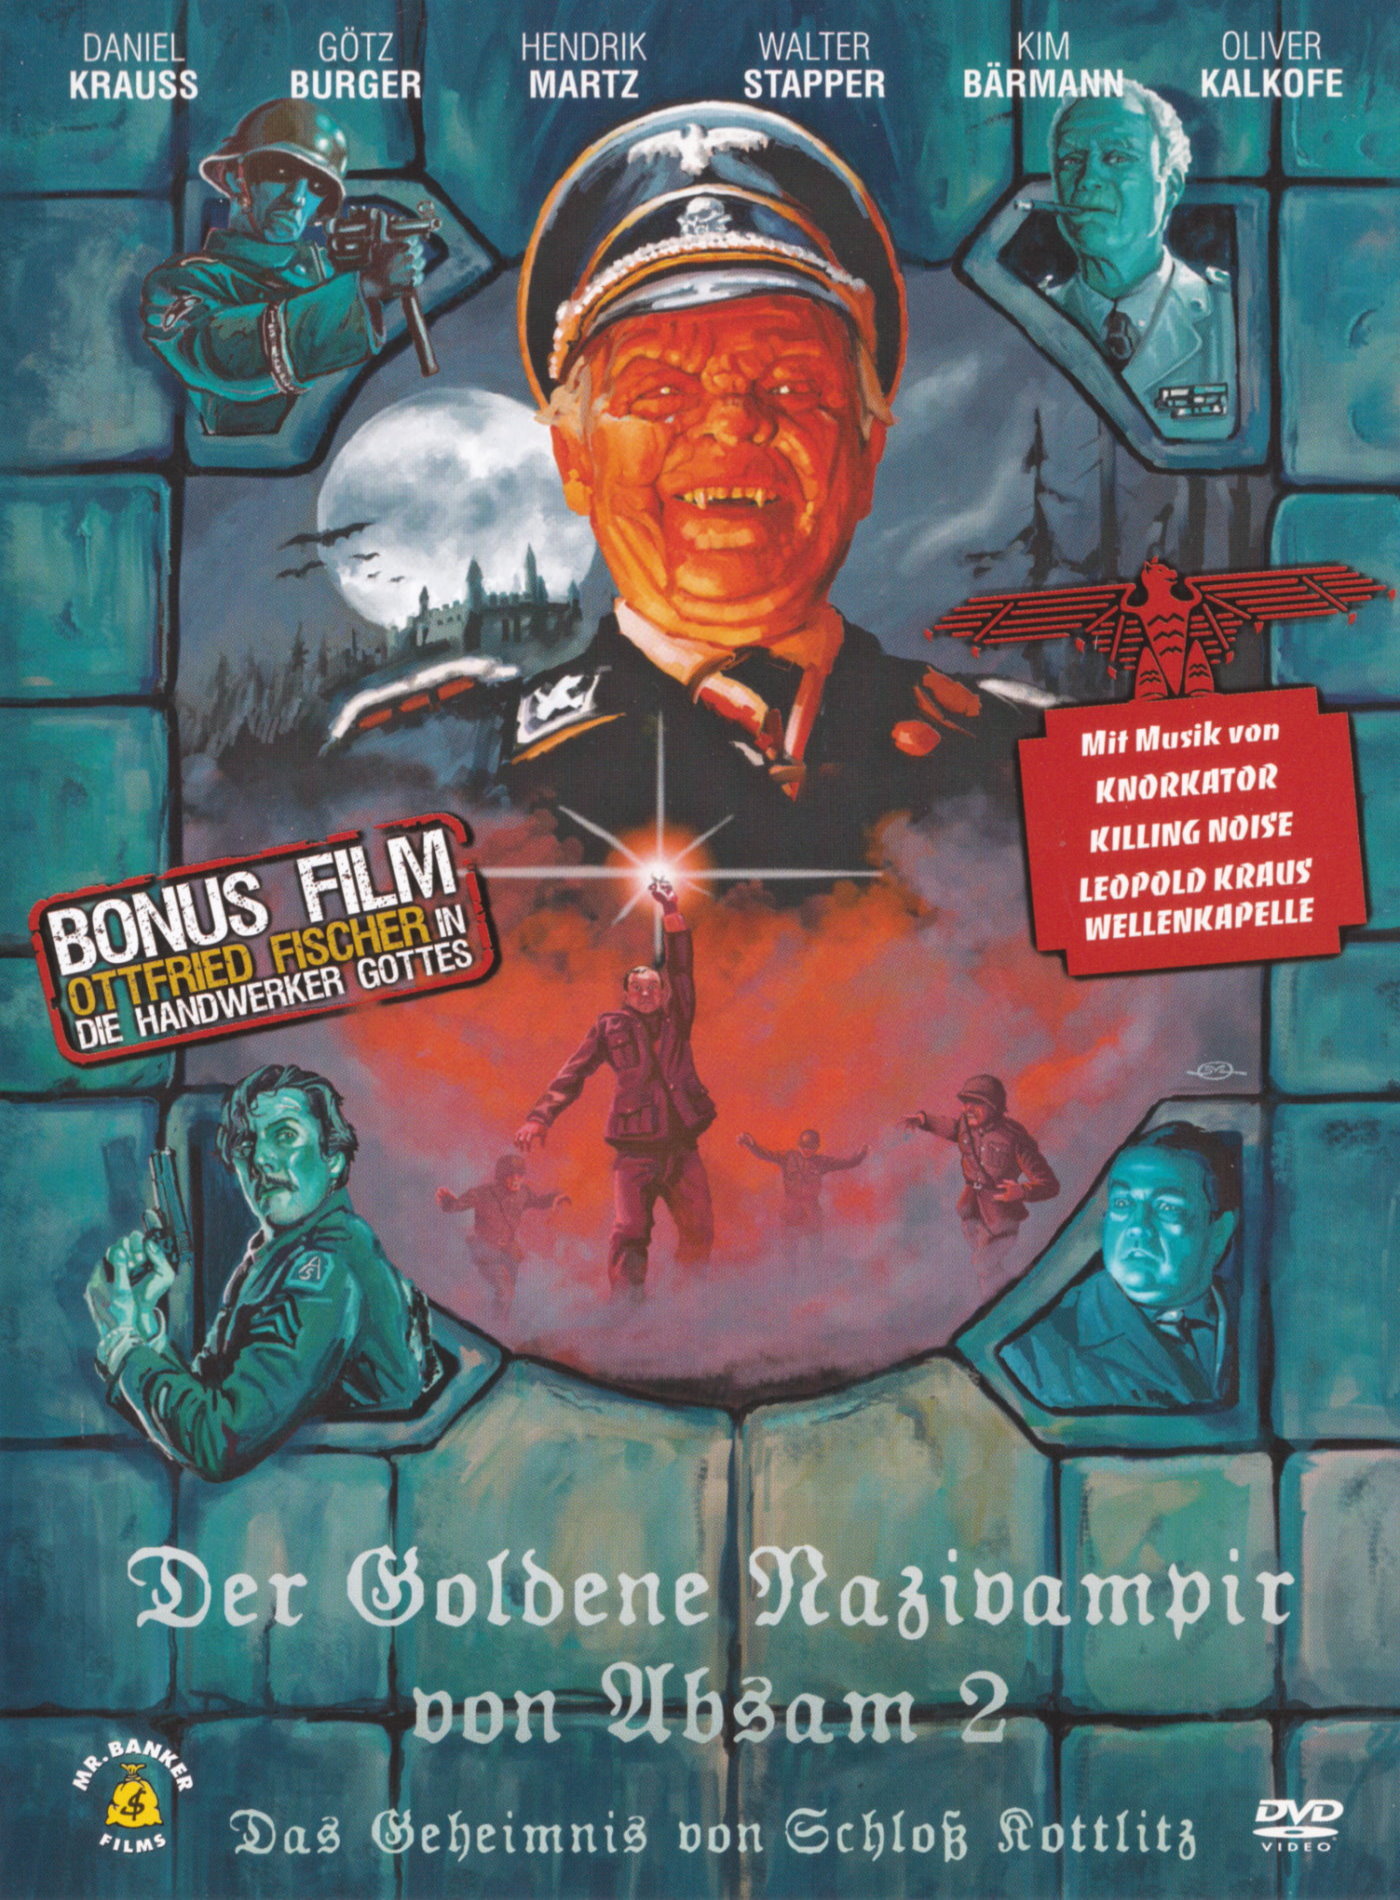 Cover - Der Goldene Nazivampir von Absam 2 - Das Geheimnis von Schloss Kottlitz.jpg